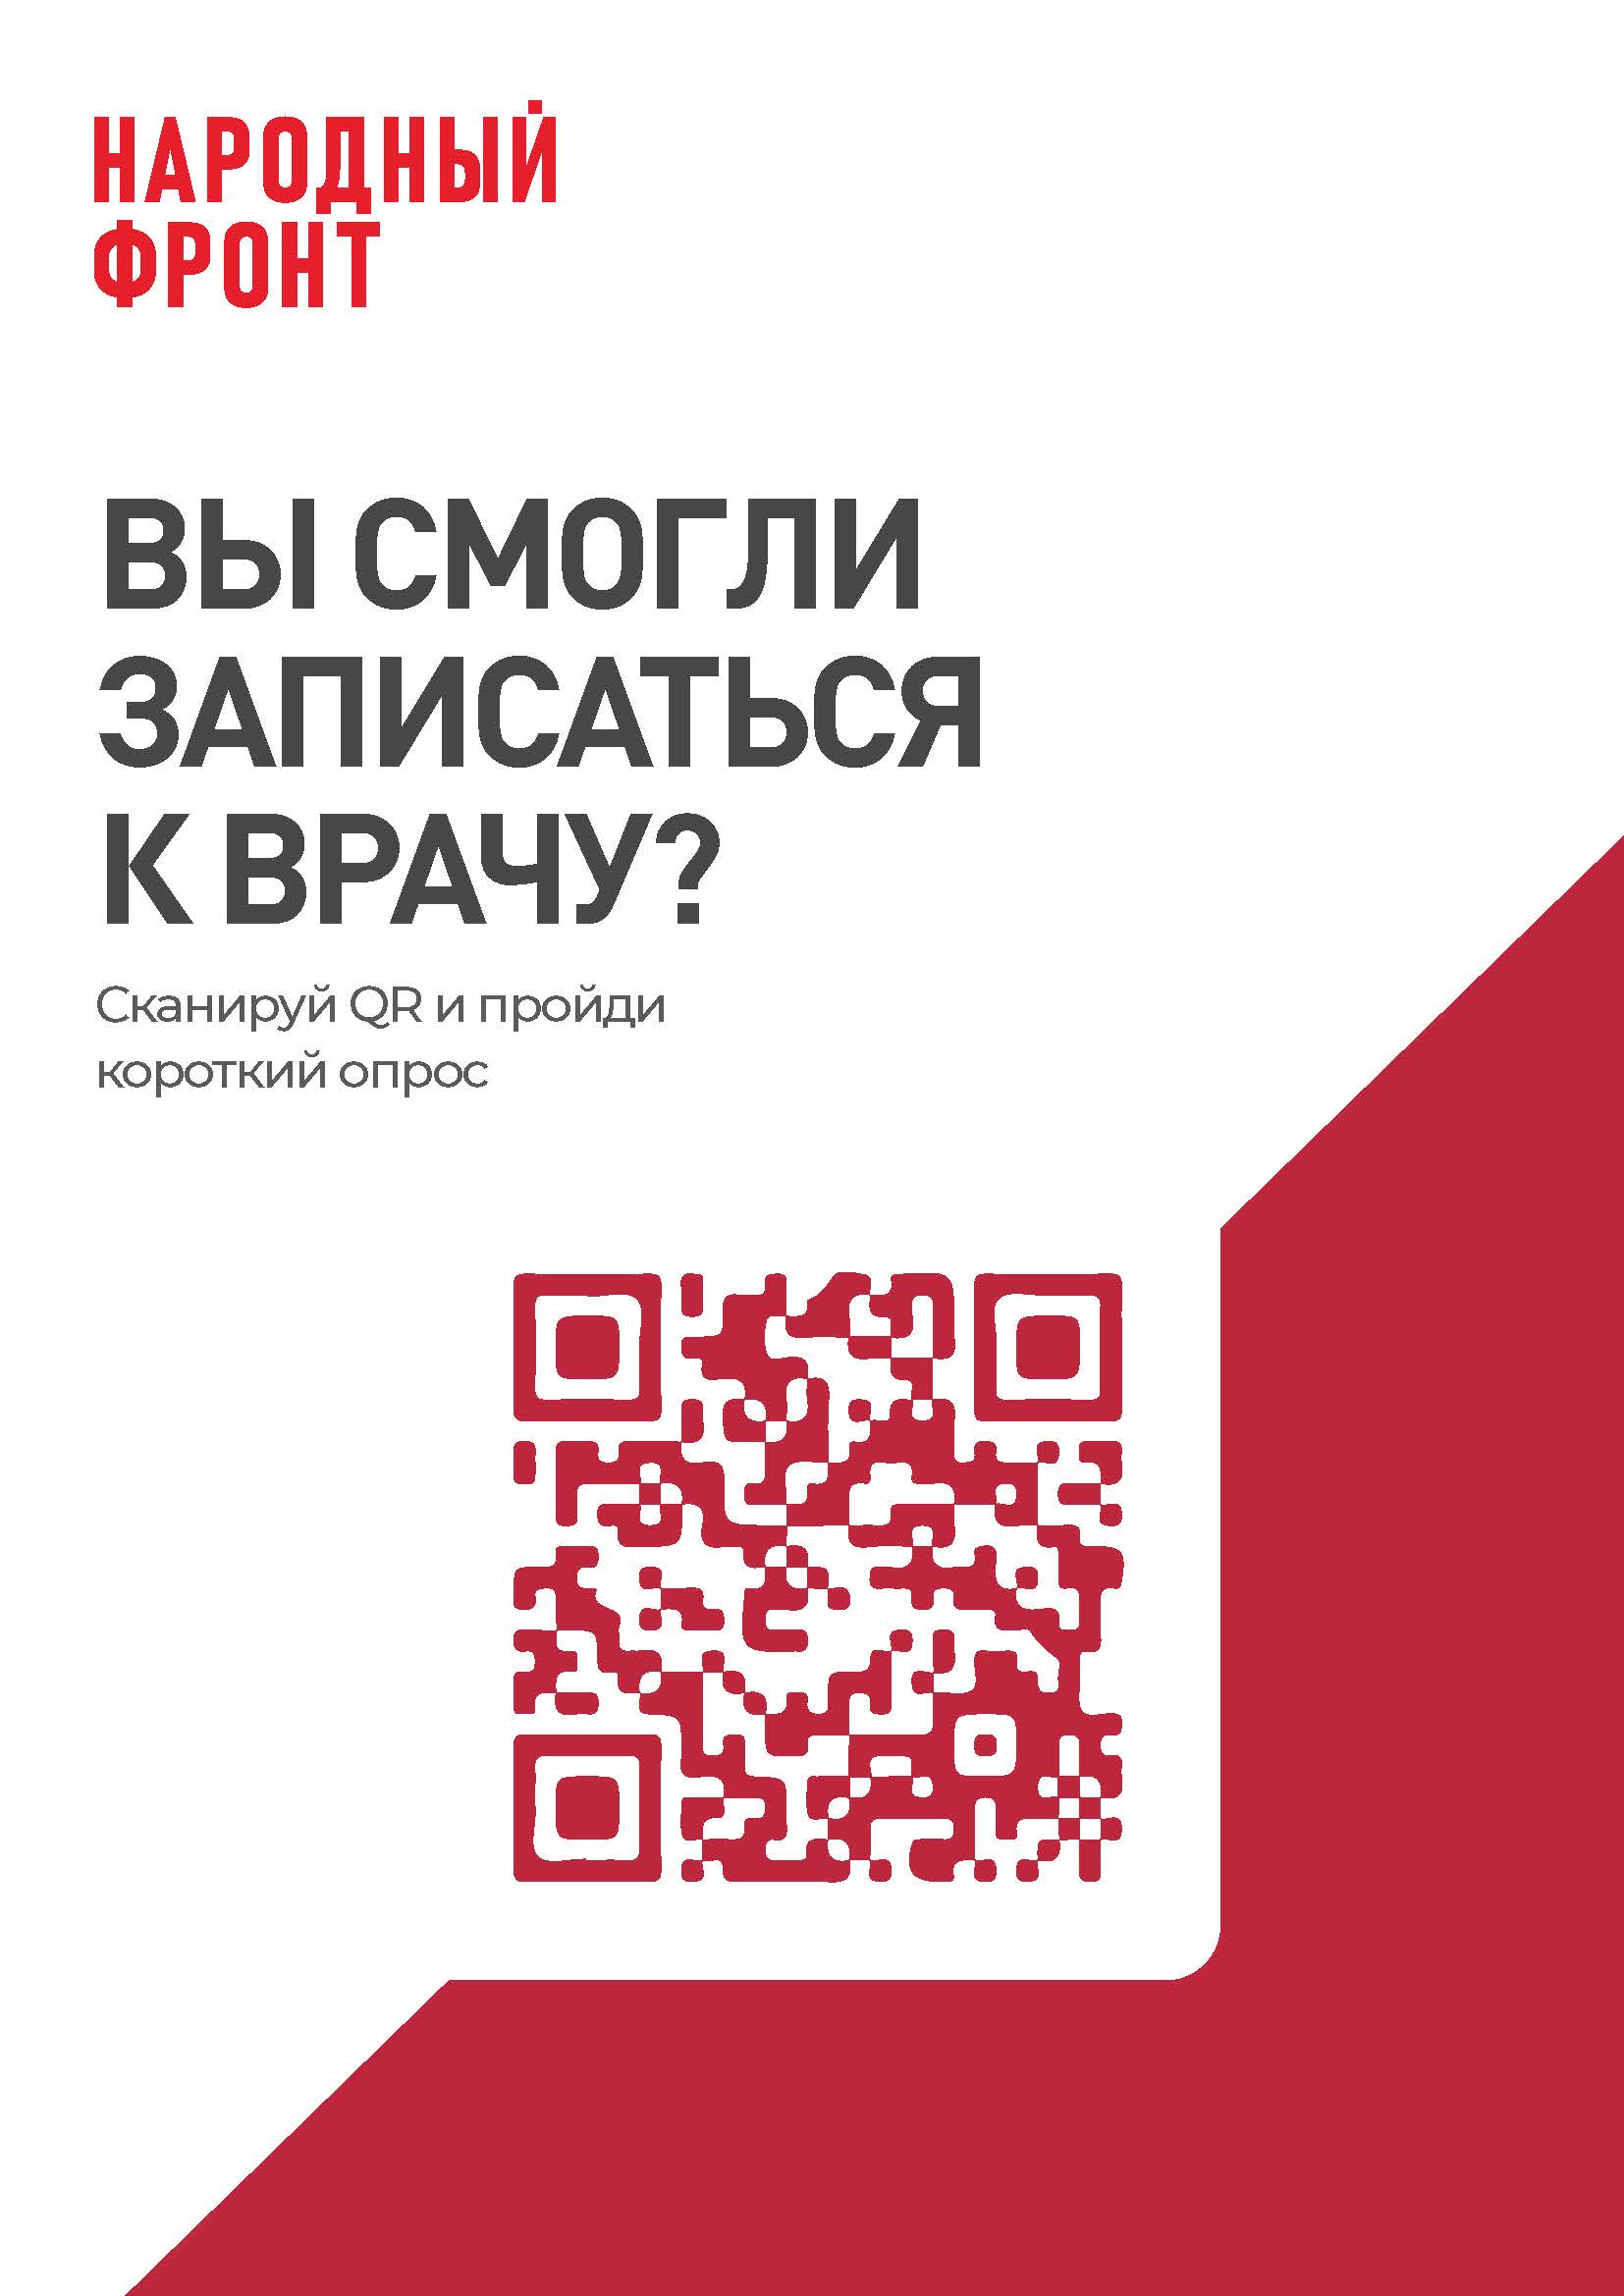 макет плаката с QR кодом